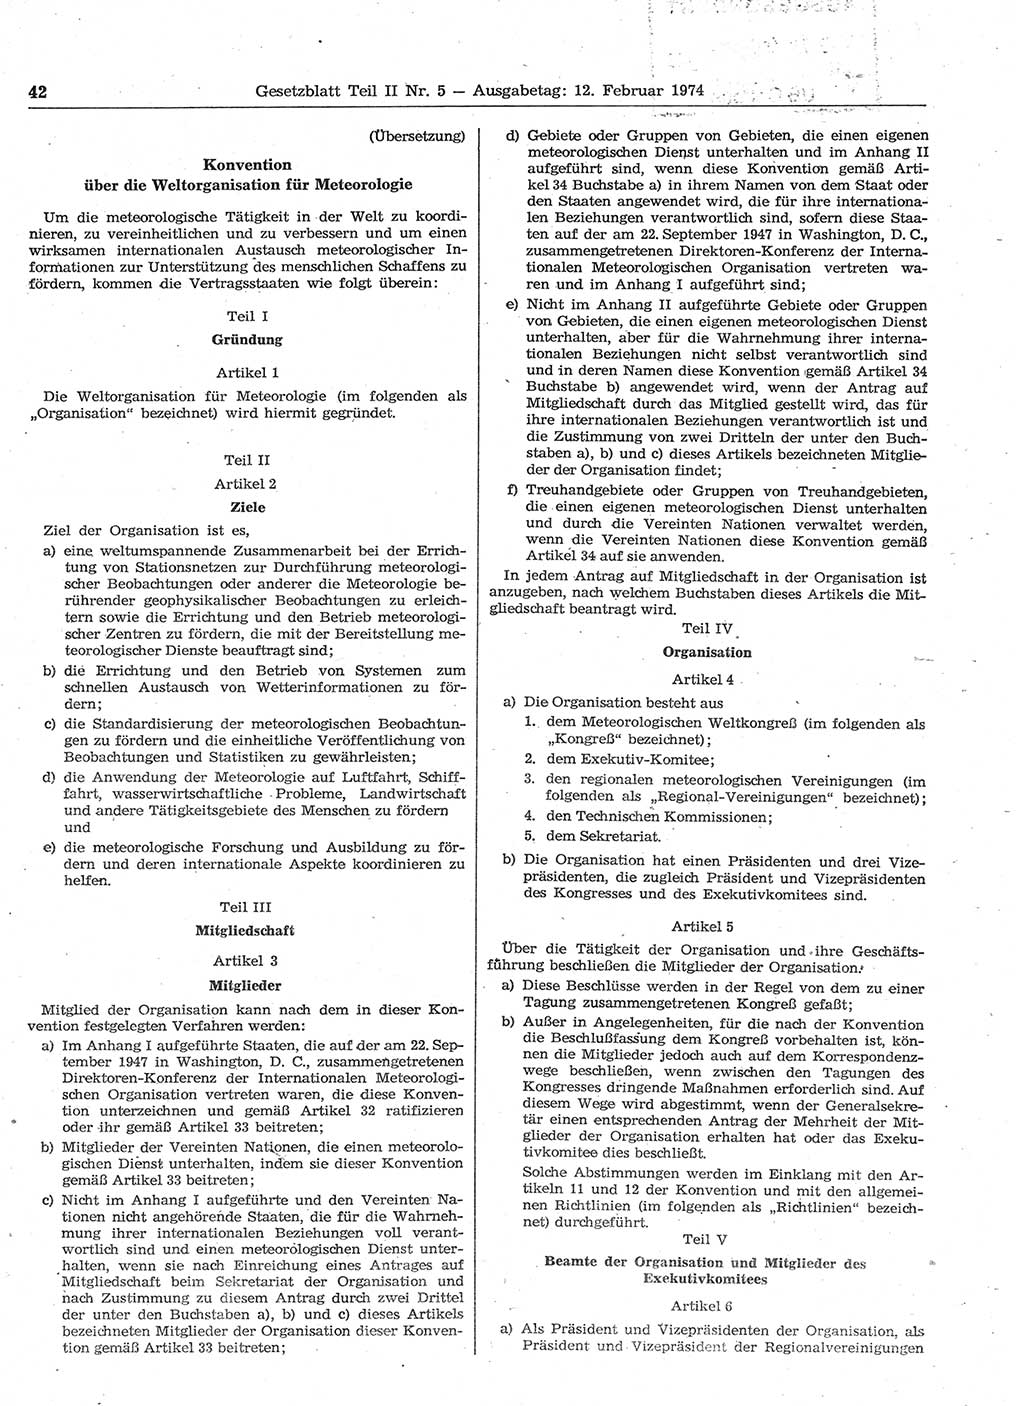 Gesetzblatt (GBl.) der Deutschen Demokratischen Republik (DDR) Teil ⅠⅠ 1974, Seite 42 (GBl. DDR ⅠⅠ 1974, S. 42)